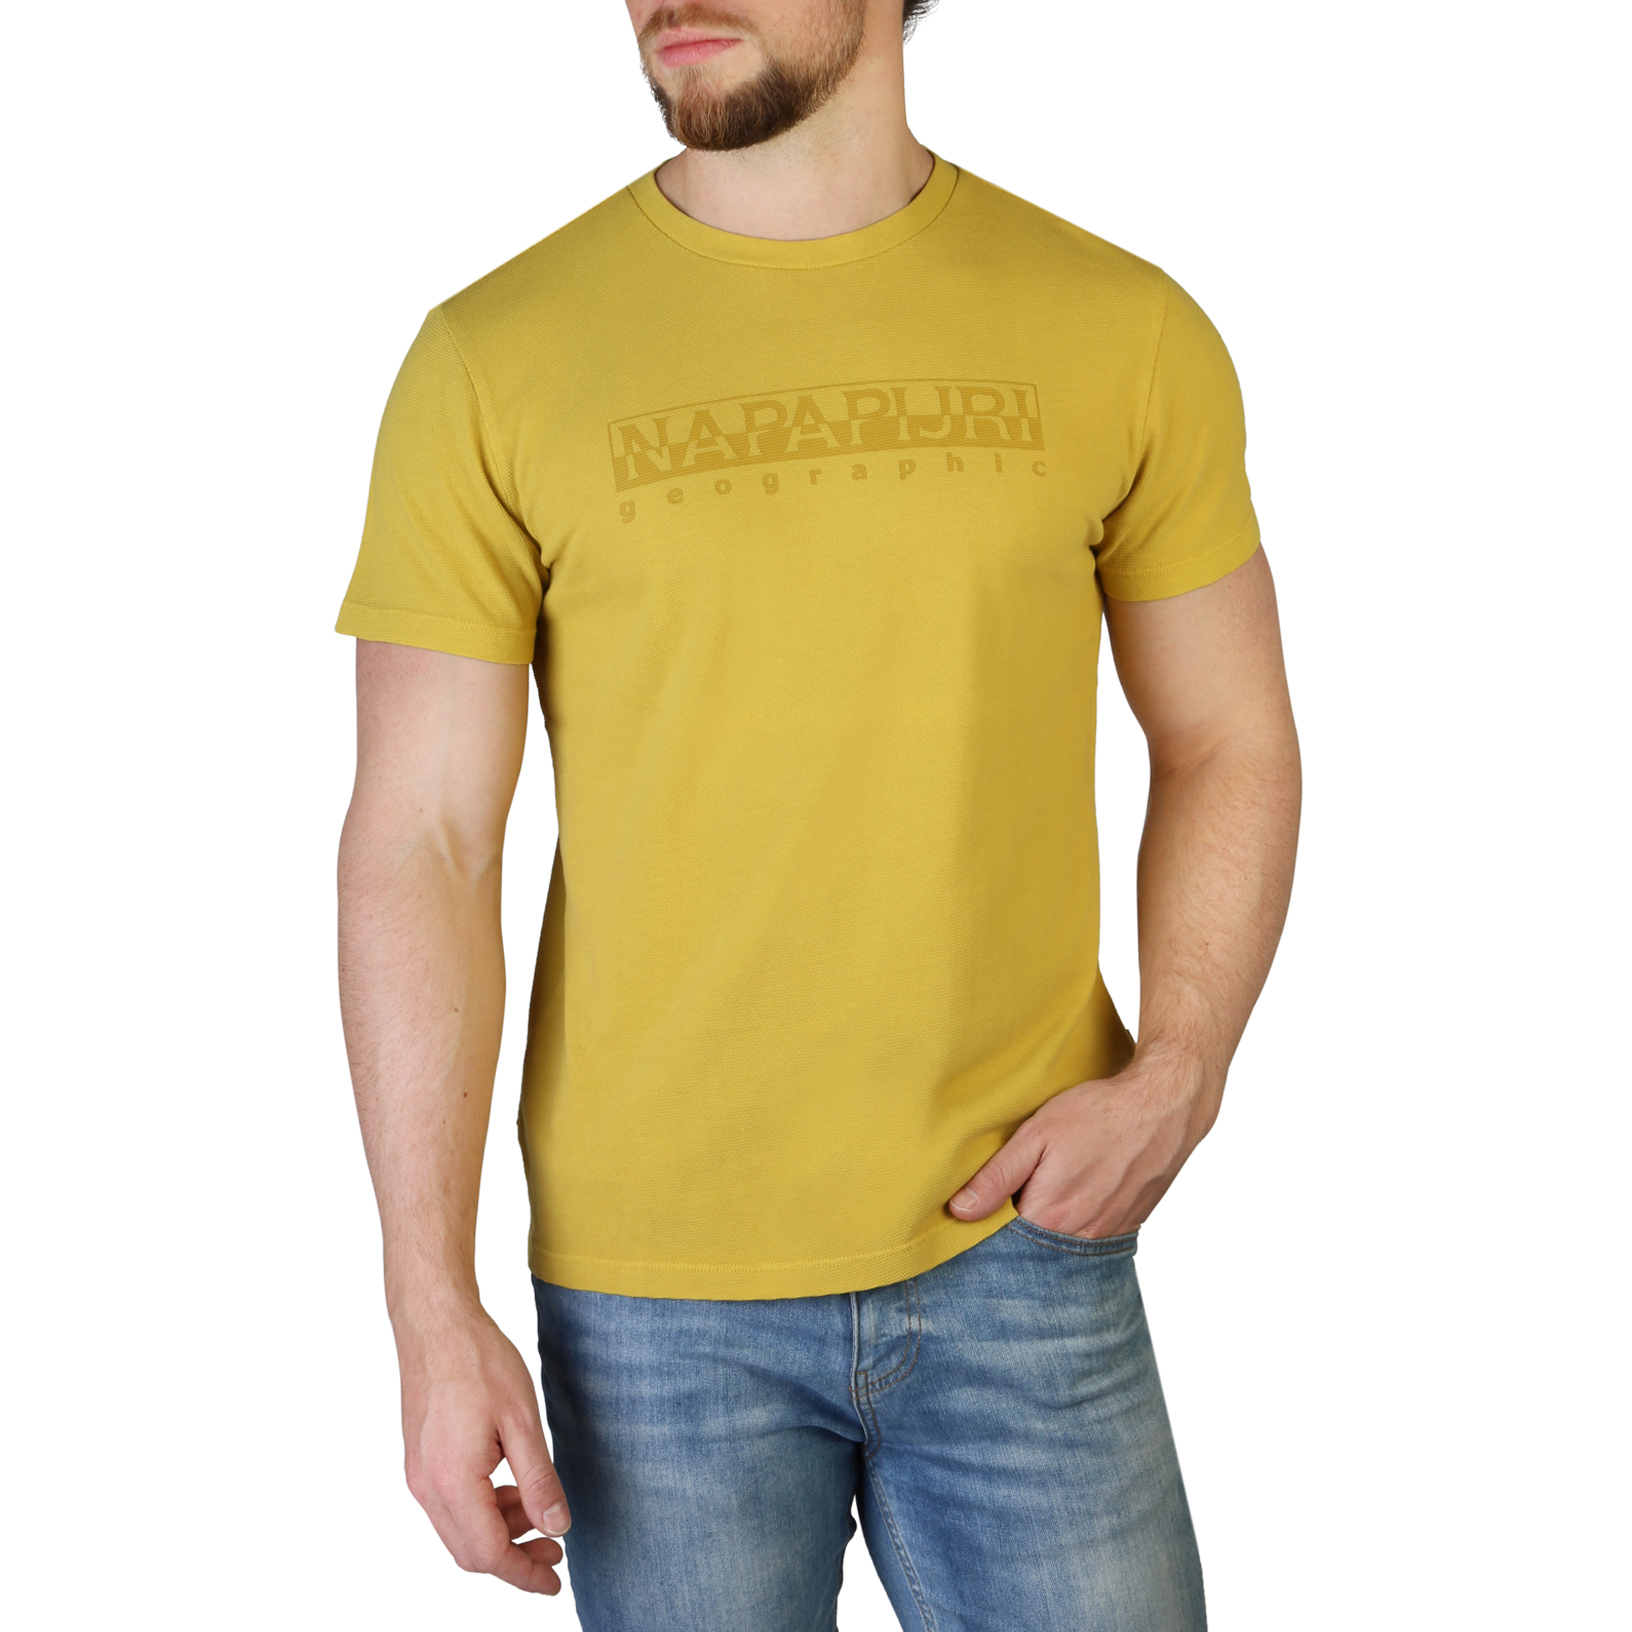 Napapijri Men T-shirts NP0A4FGQ Yellow